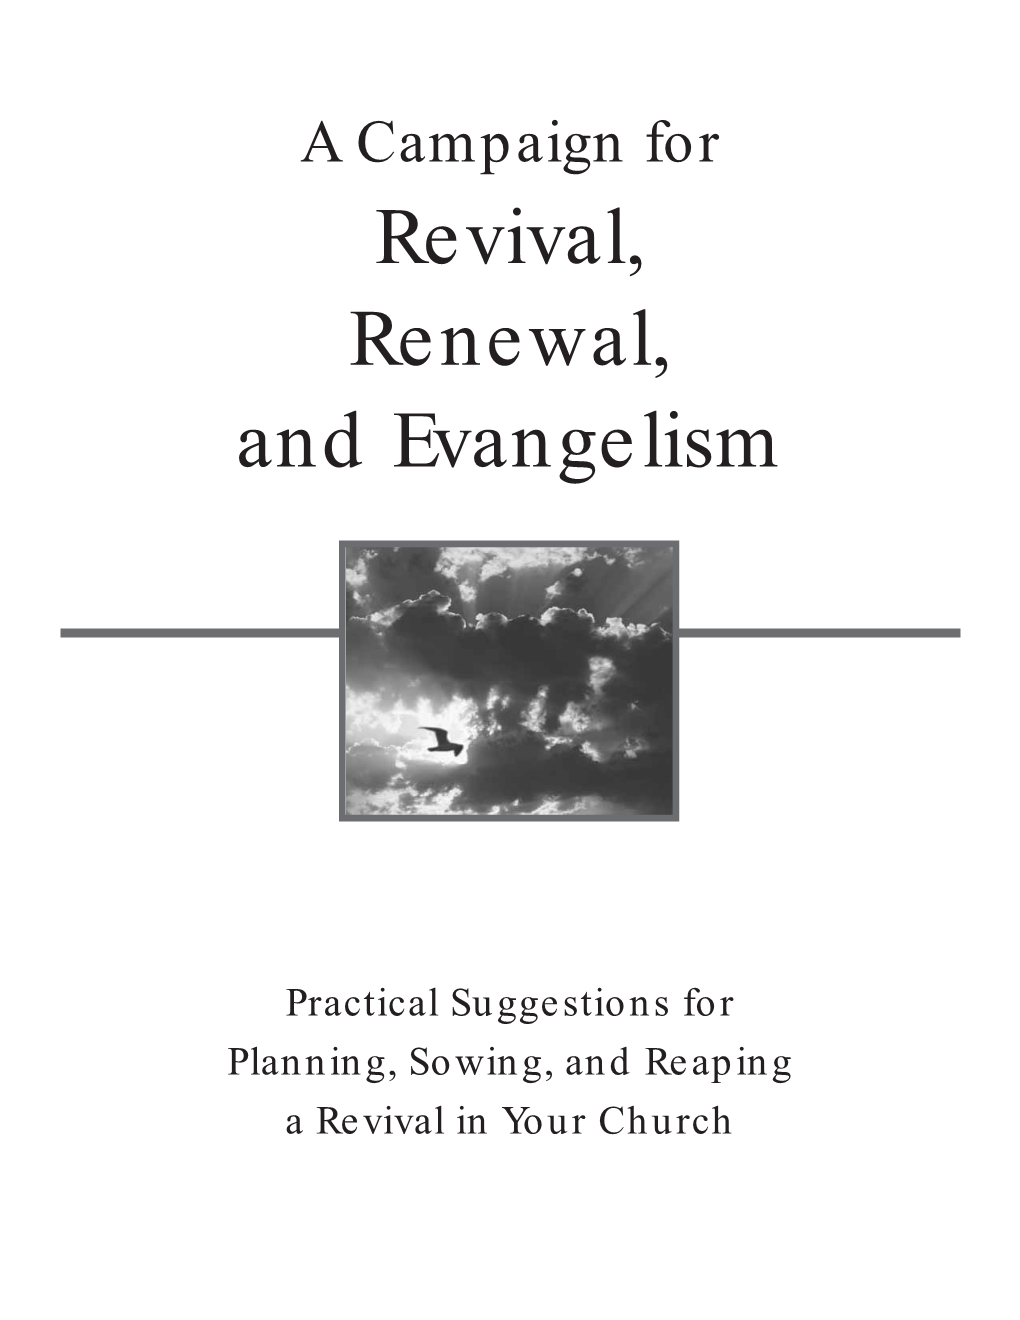 Revival, Renewal, and Evangelism